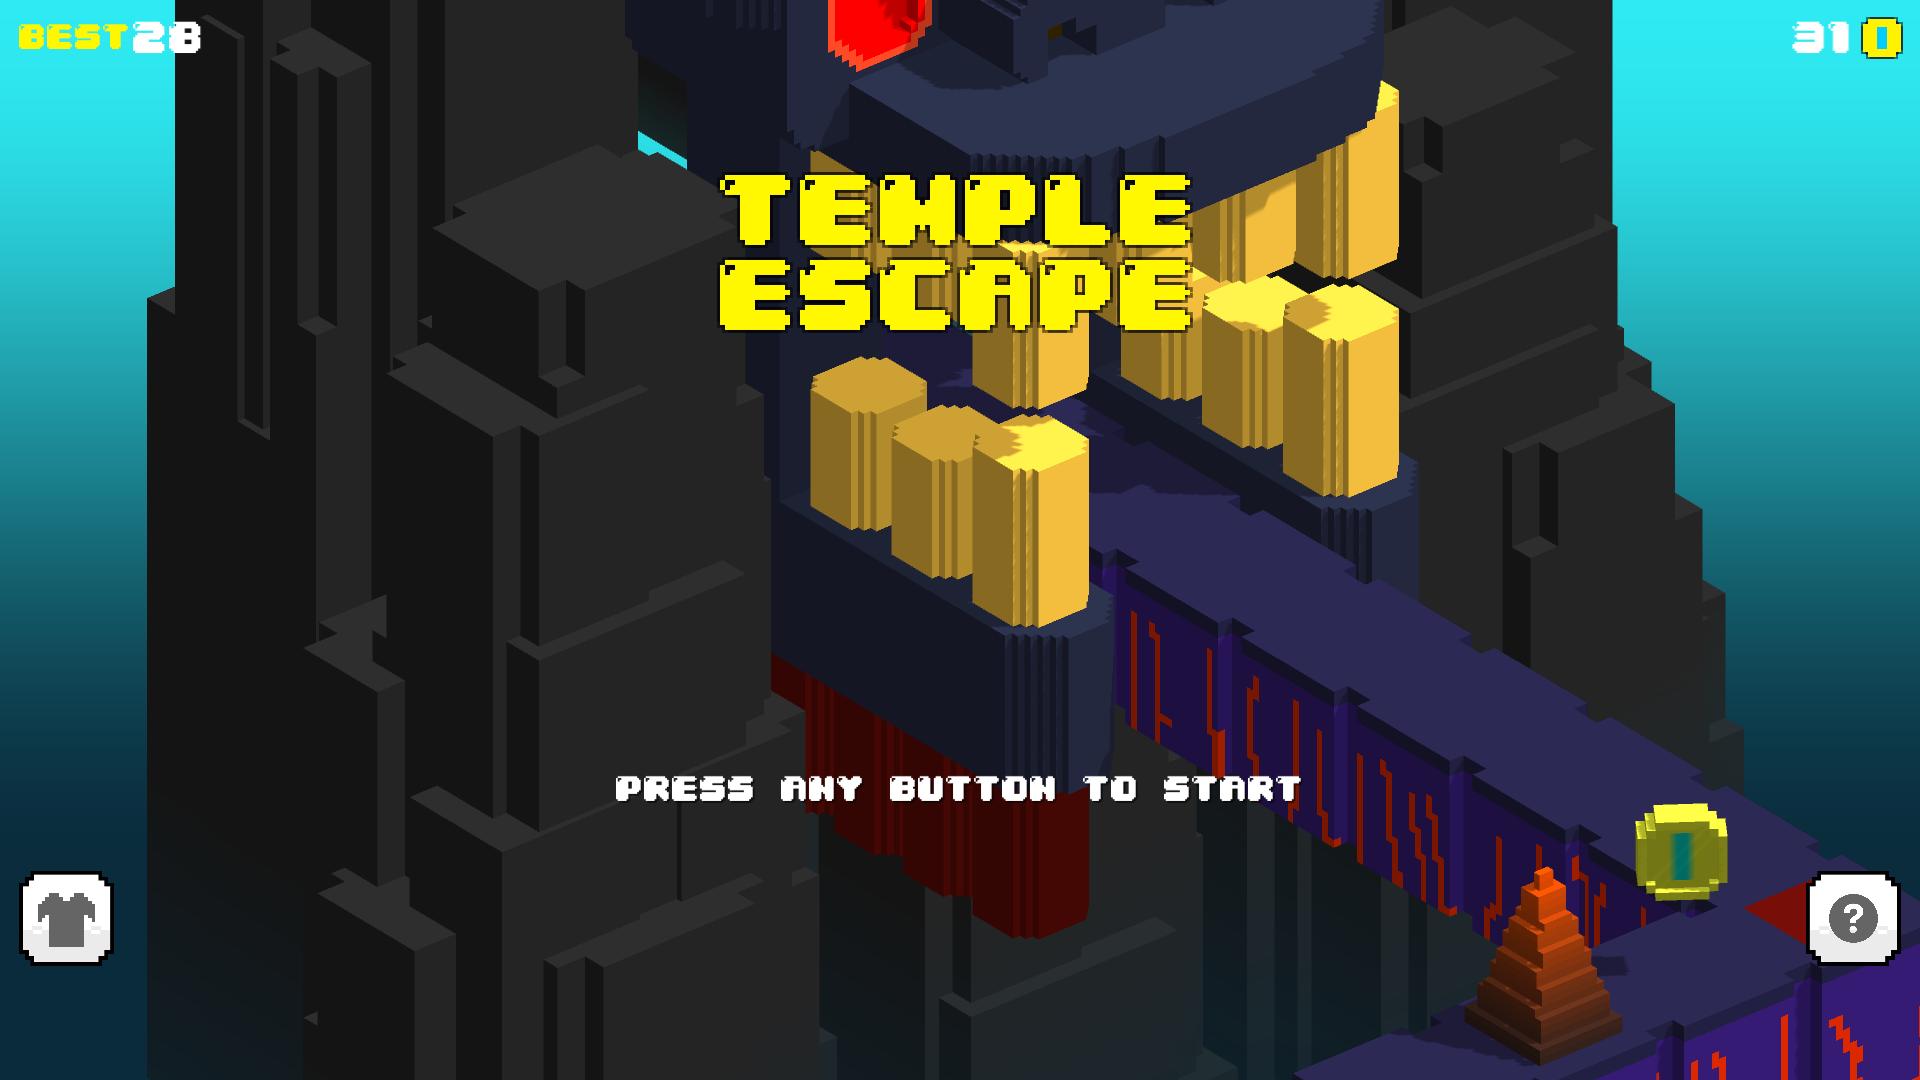 Temple escape